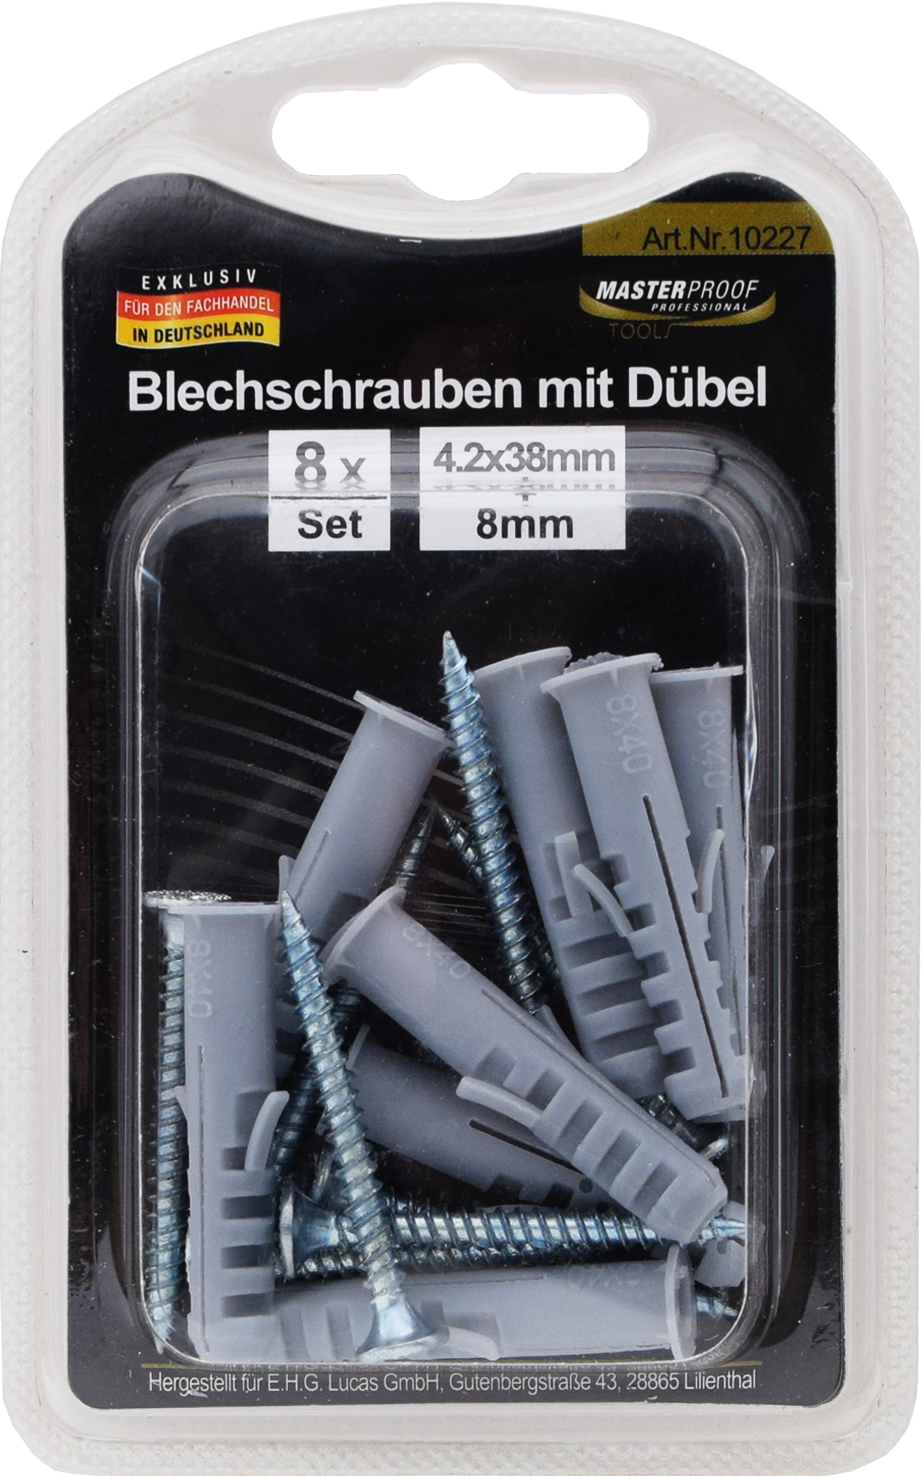 Picture of Blechschrauben 4 x 38mm mit Dübel 8mm